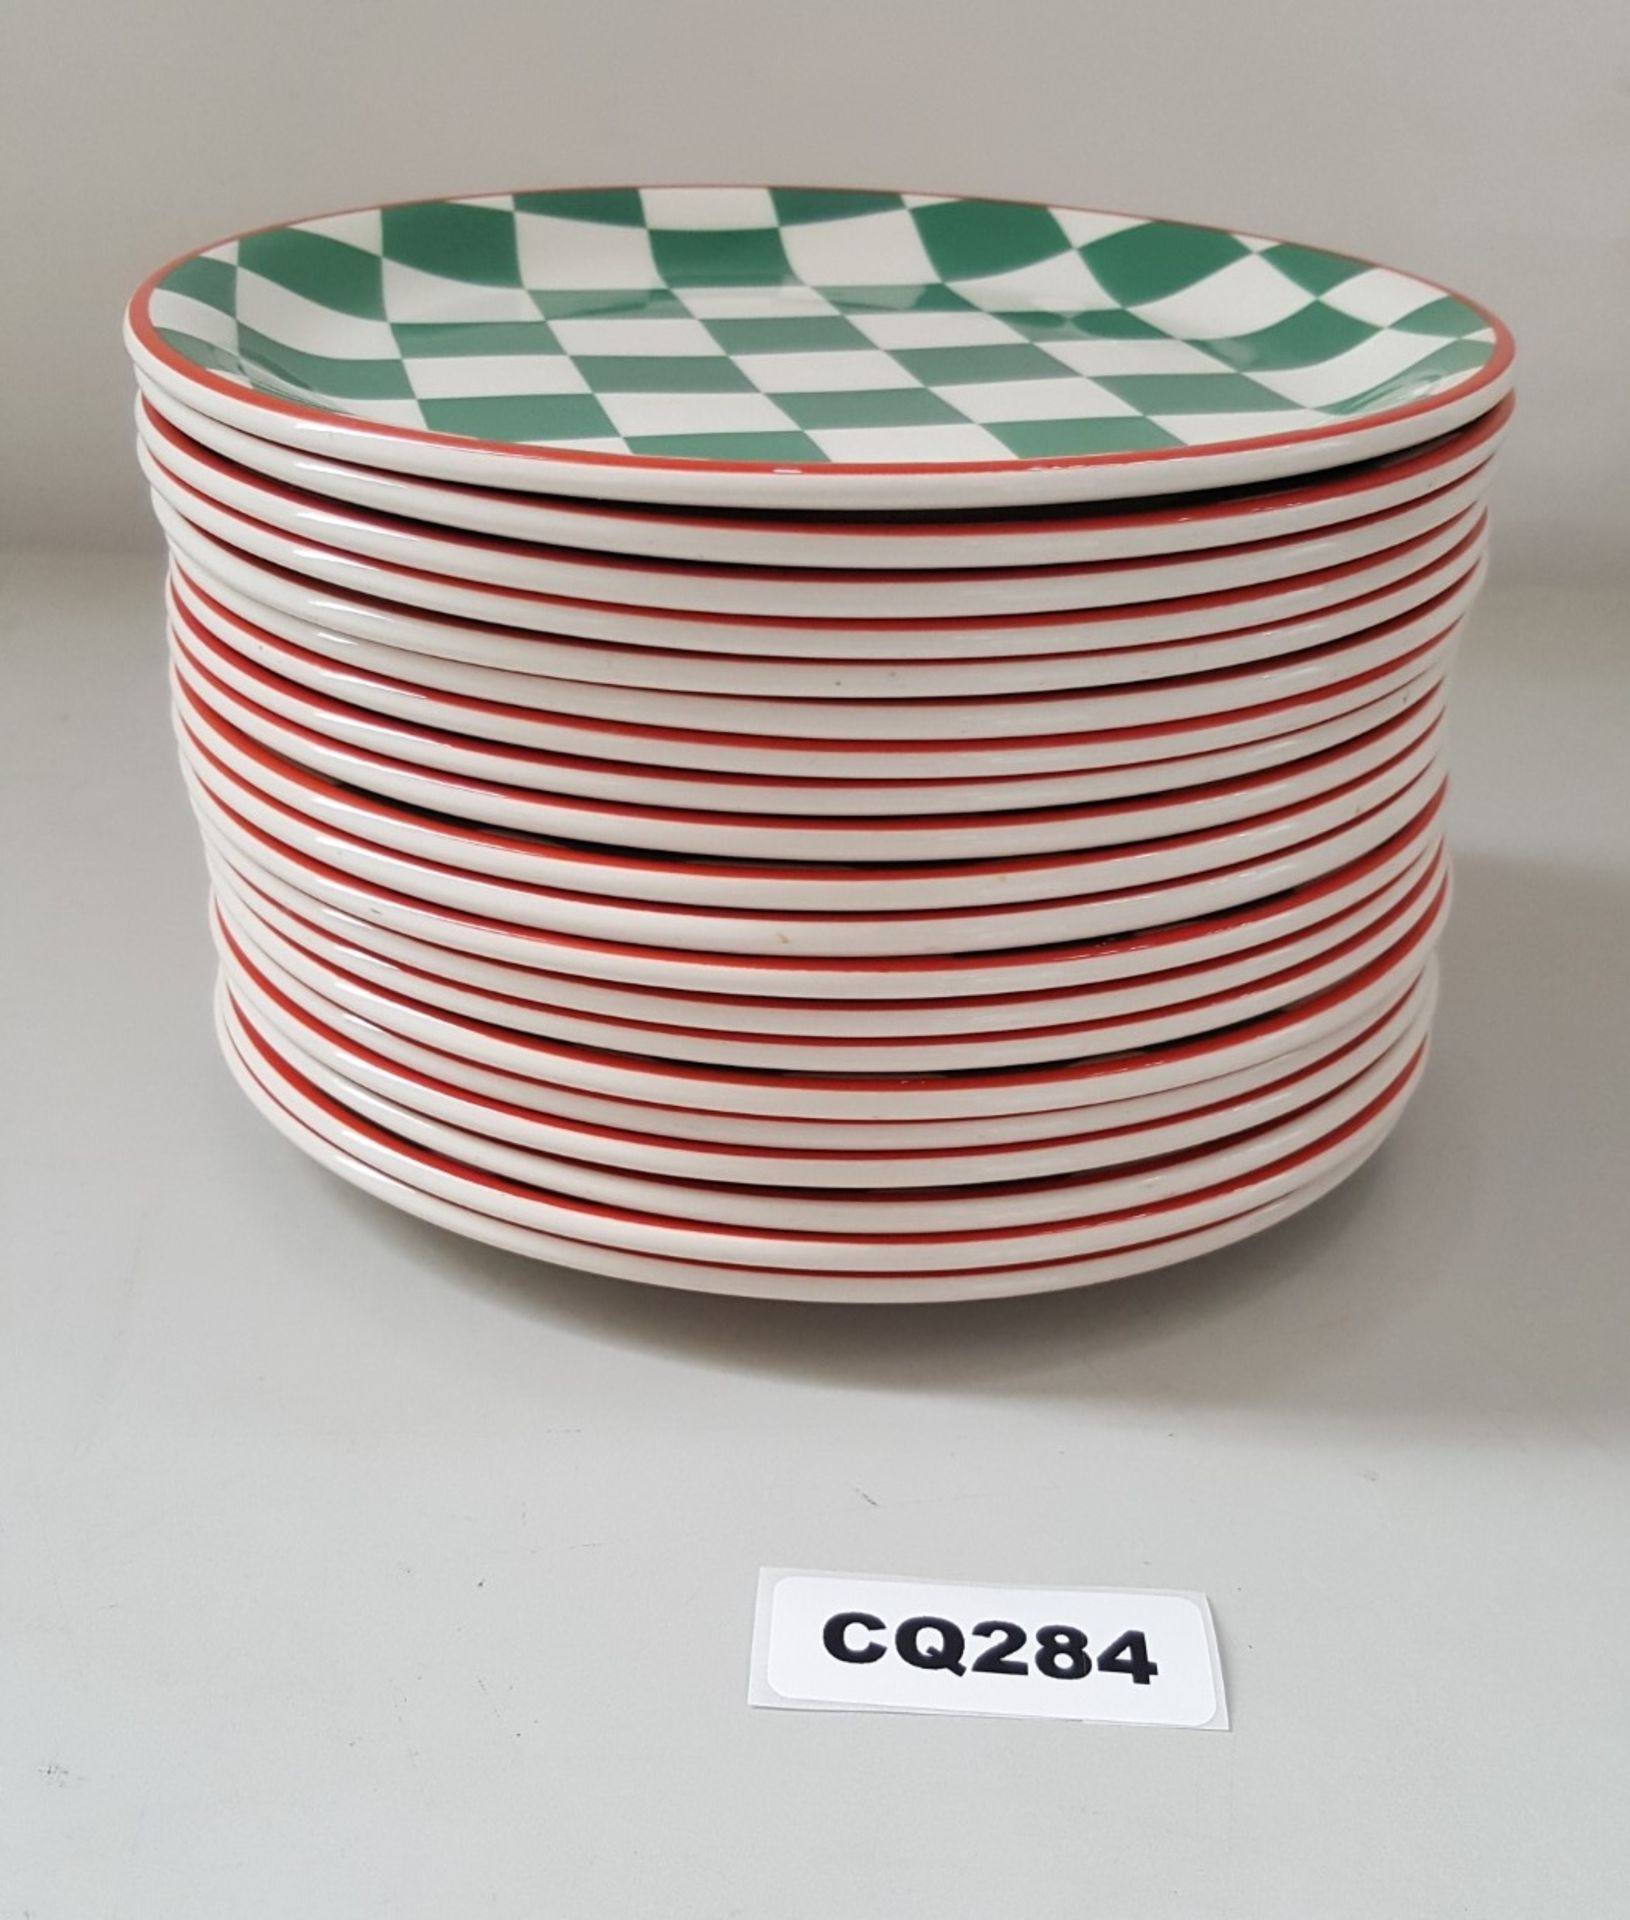 20 x Steelite Plates Checkered Green&White With Red Outline 20CM - Ref CQ284 - Bild 2 aus 4